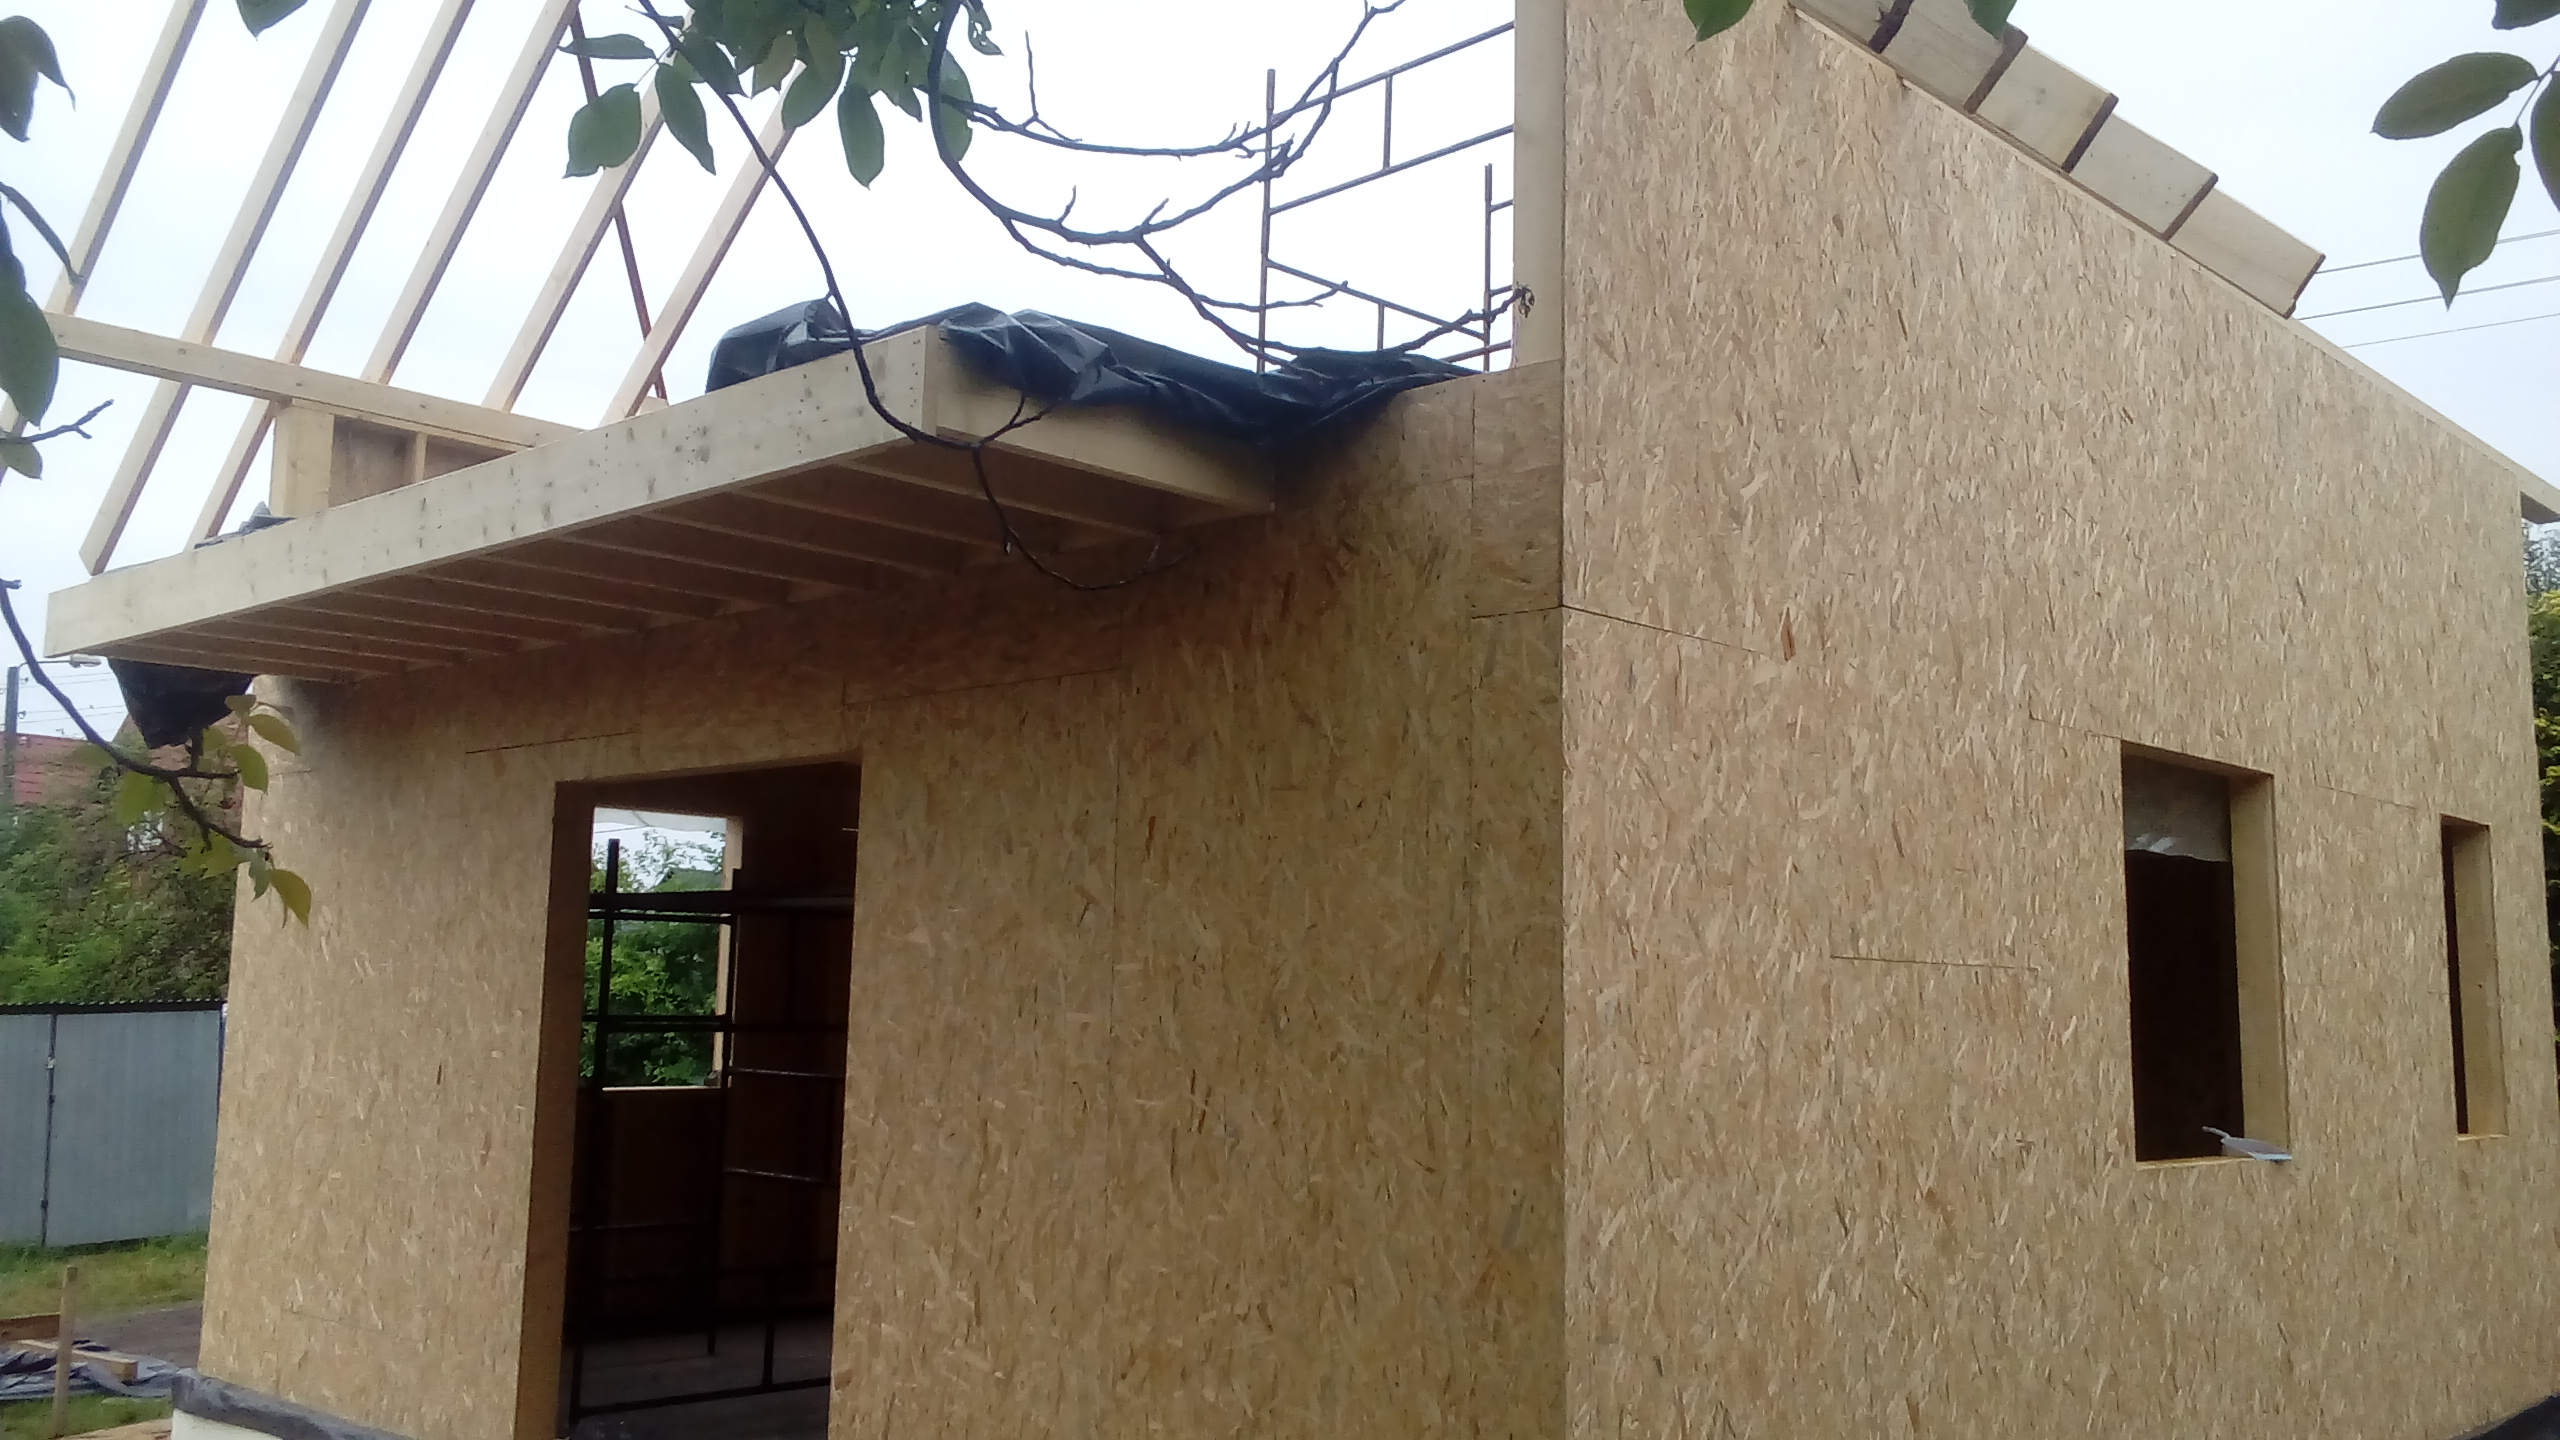 Obicie konstrukcji pytami OSB, pooenie membrany dachowej,blachodachwki i wiatroizolacji